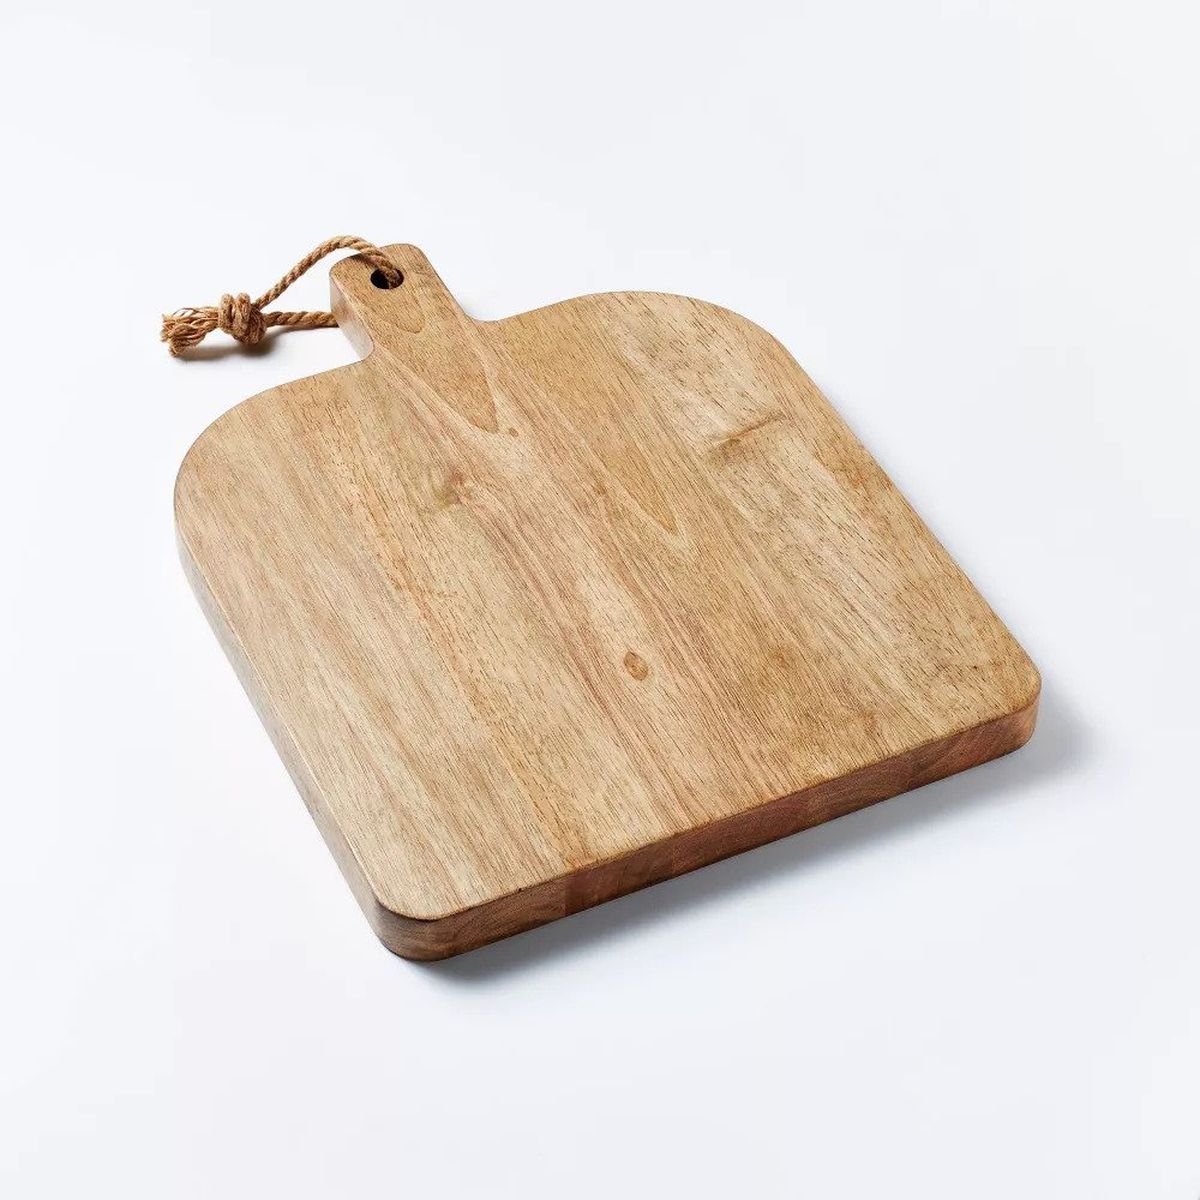 A wood cutting board